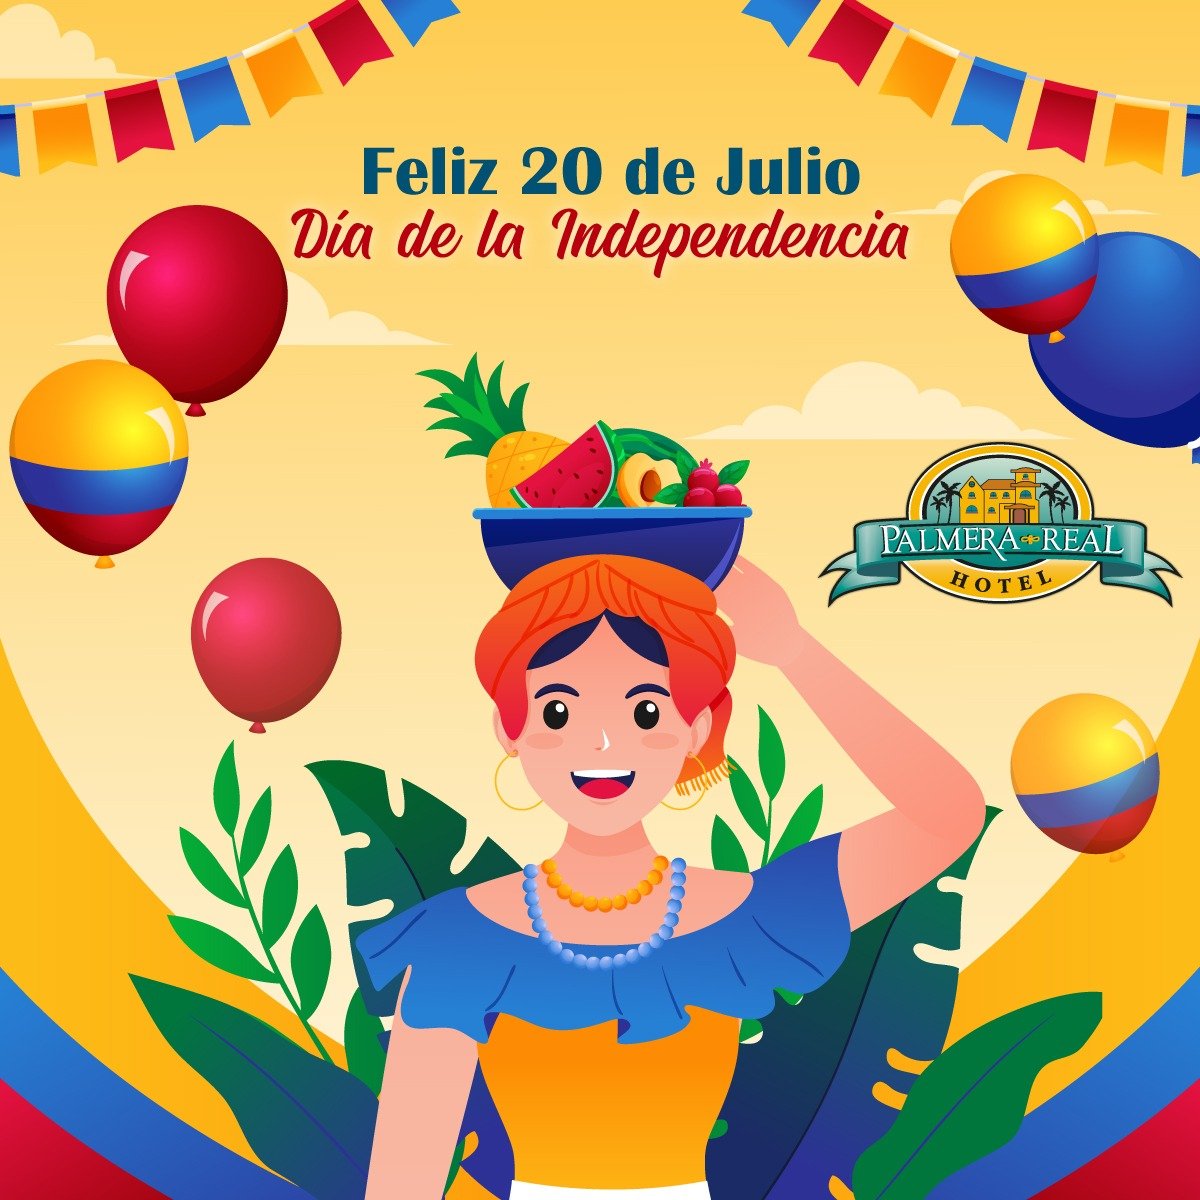 Porque nos enorgullece ser parte de esta HERMOSA TIERRA🇨🇴, Feliz día de la Independencia💪, a todos los que tenemos el privilegio de ser COLOMBIANOS💛💙❤️.
.
#HotelPalmeraReal #DíadeIndependencia #colombiatierraquerida #independenciacolombia